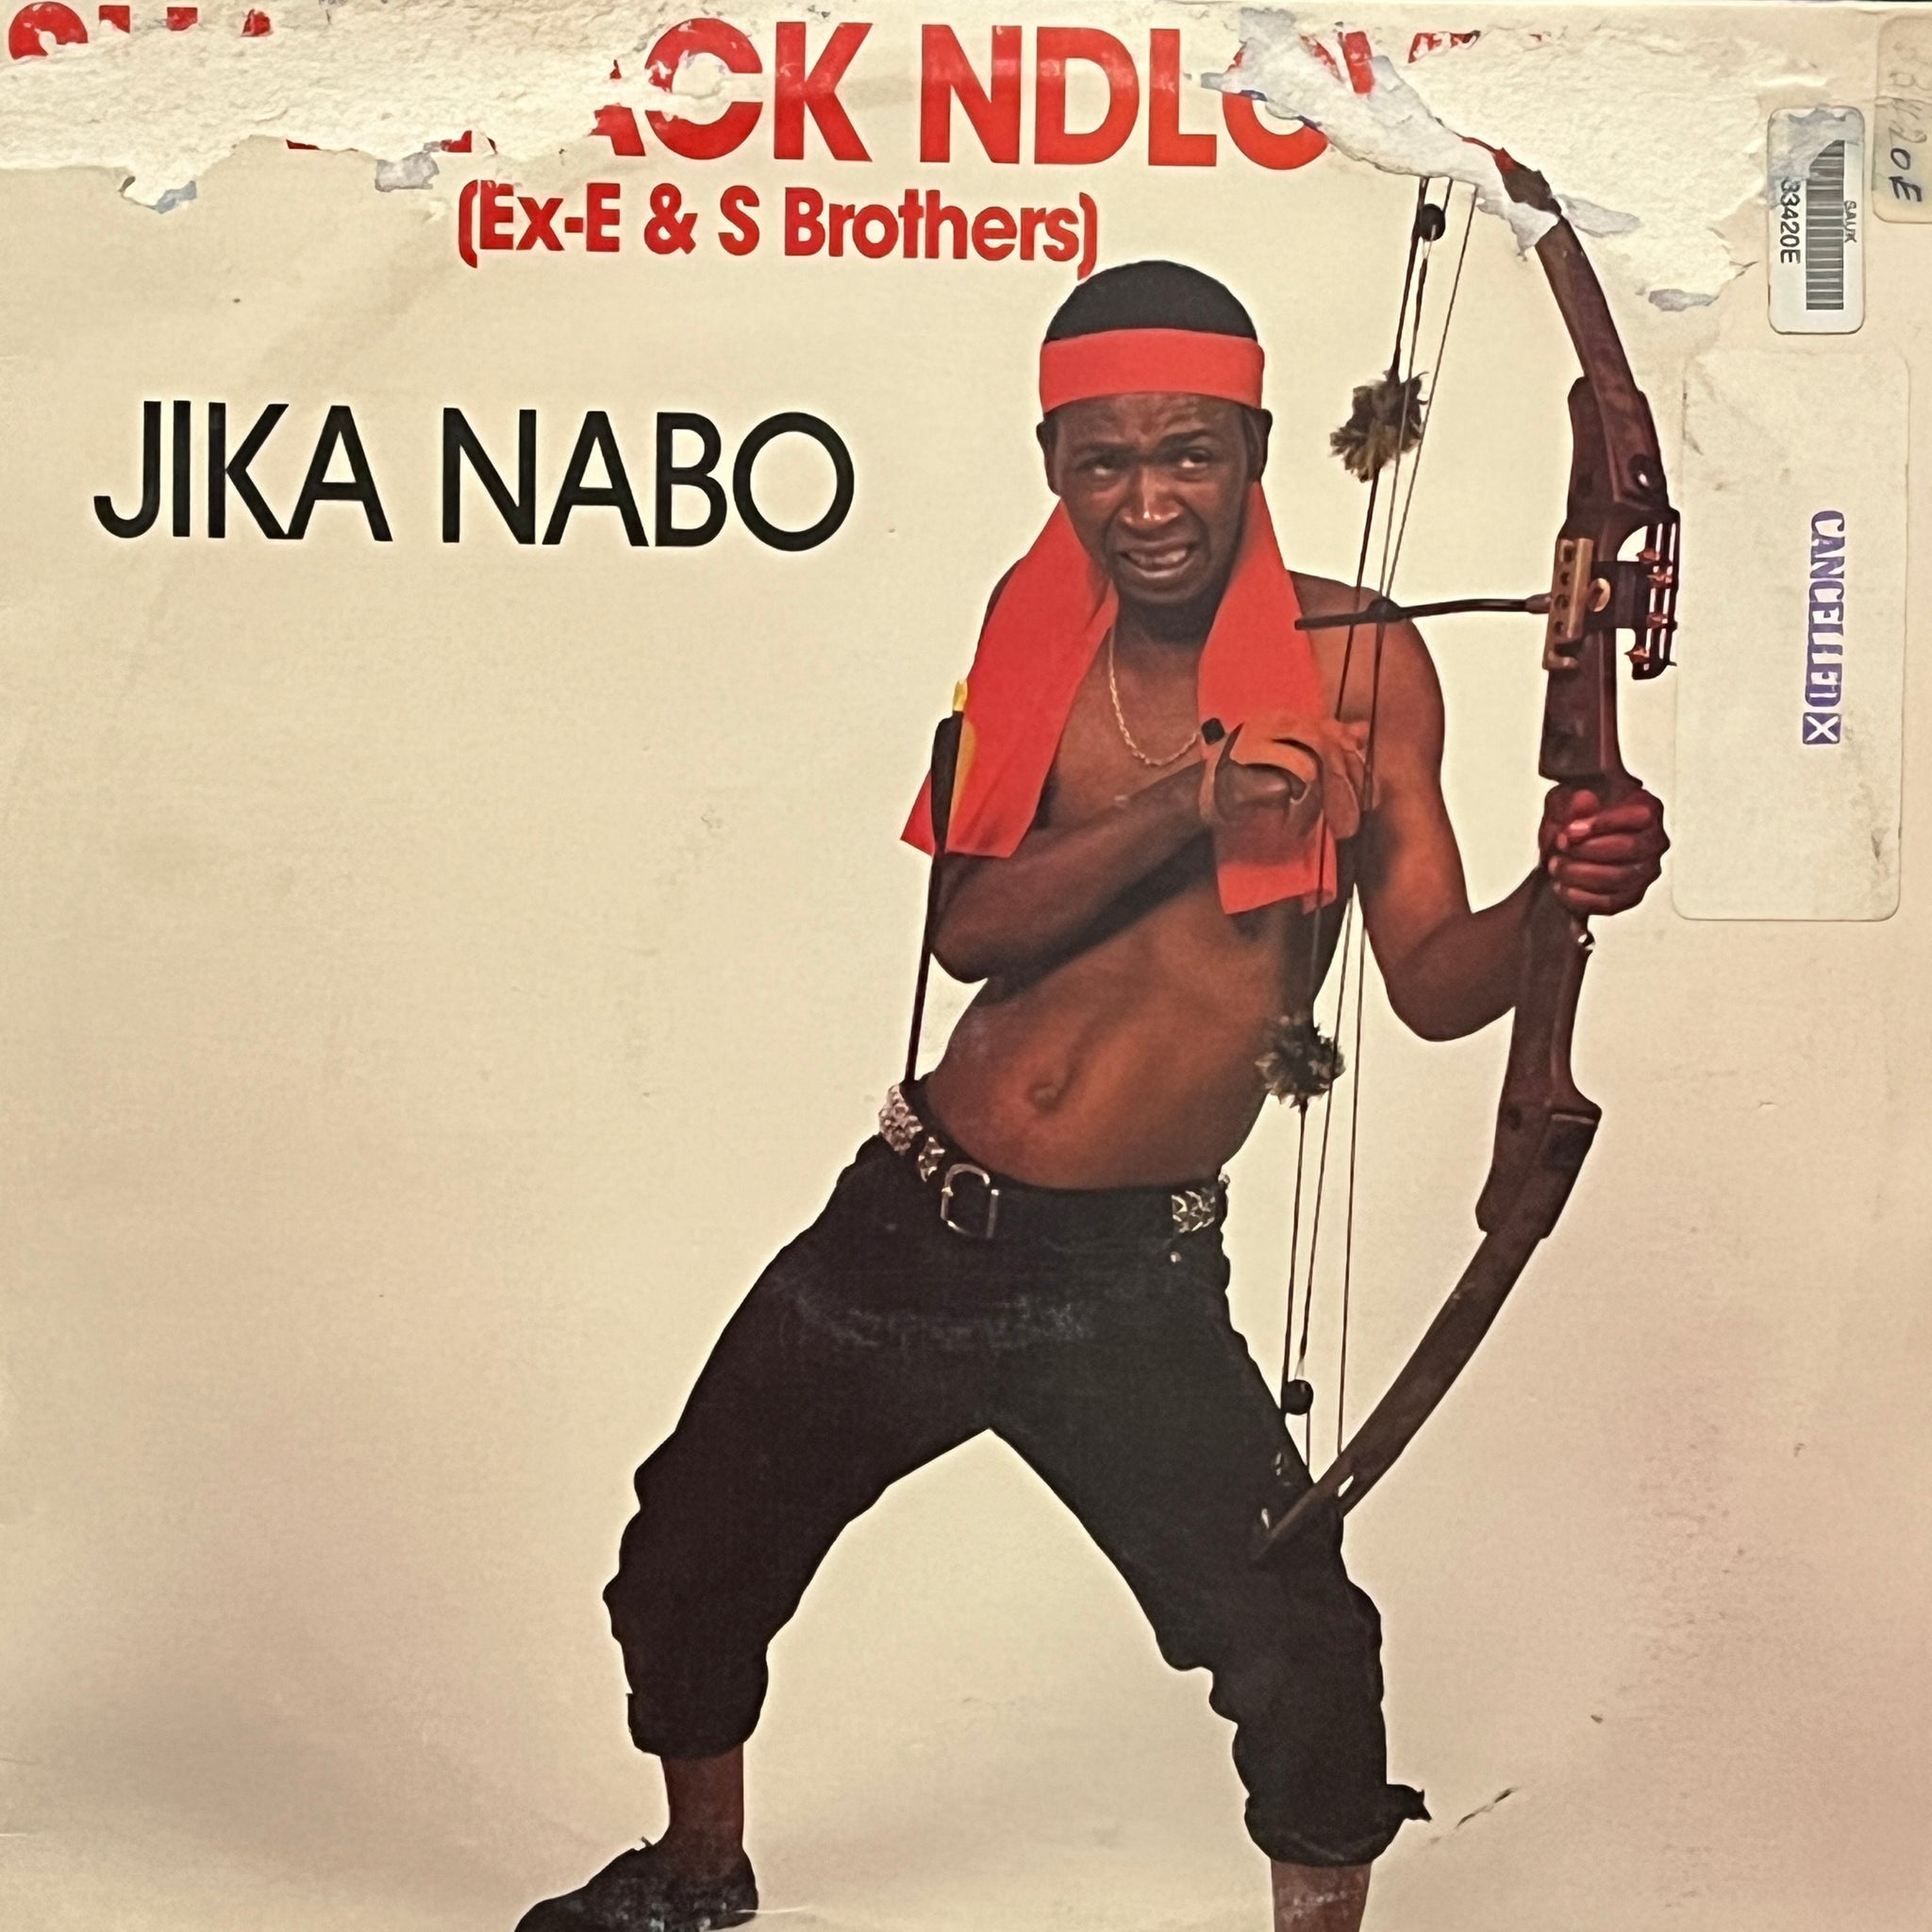 Shadrack Ndlovu – Jika Nabo